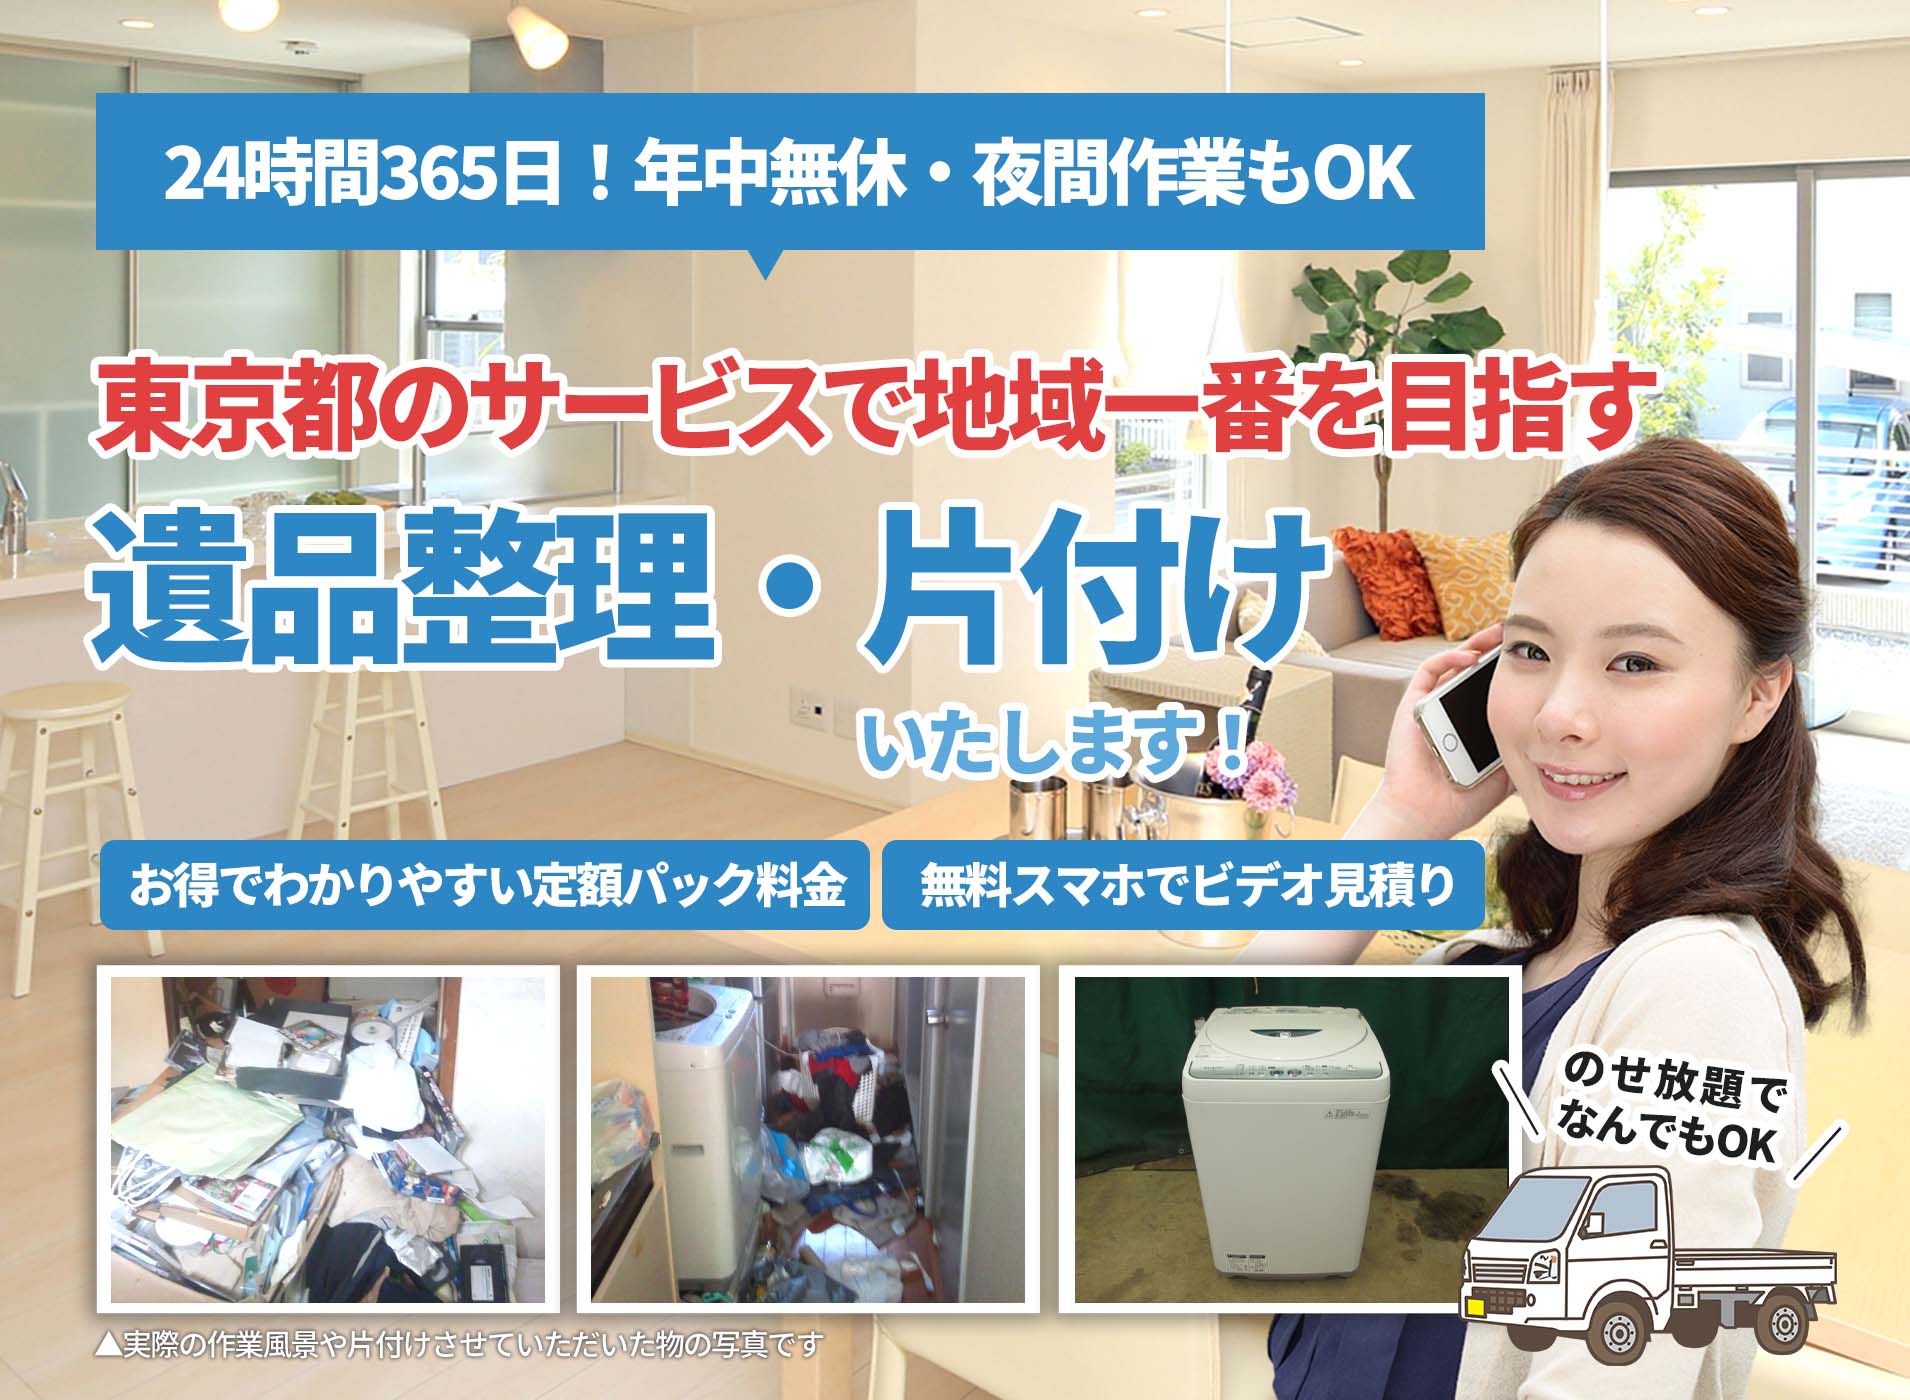 東京都のサービスで地域一番を目指すＬＴＪ遺品整理隊の遺品整理サービス